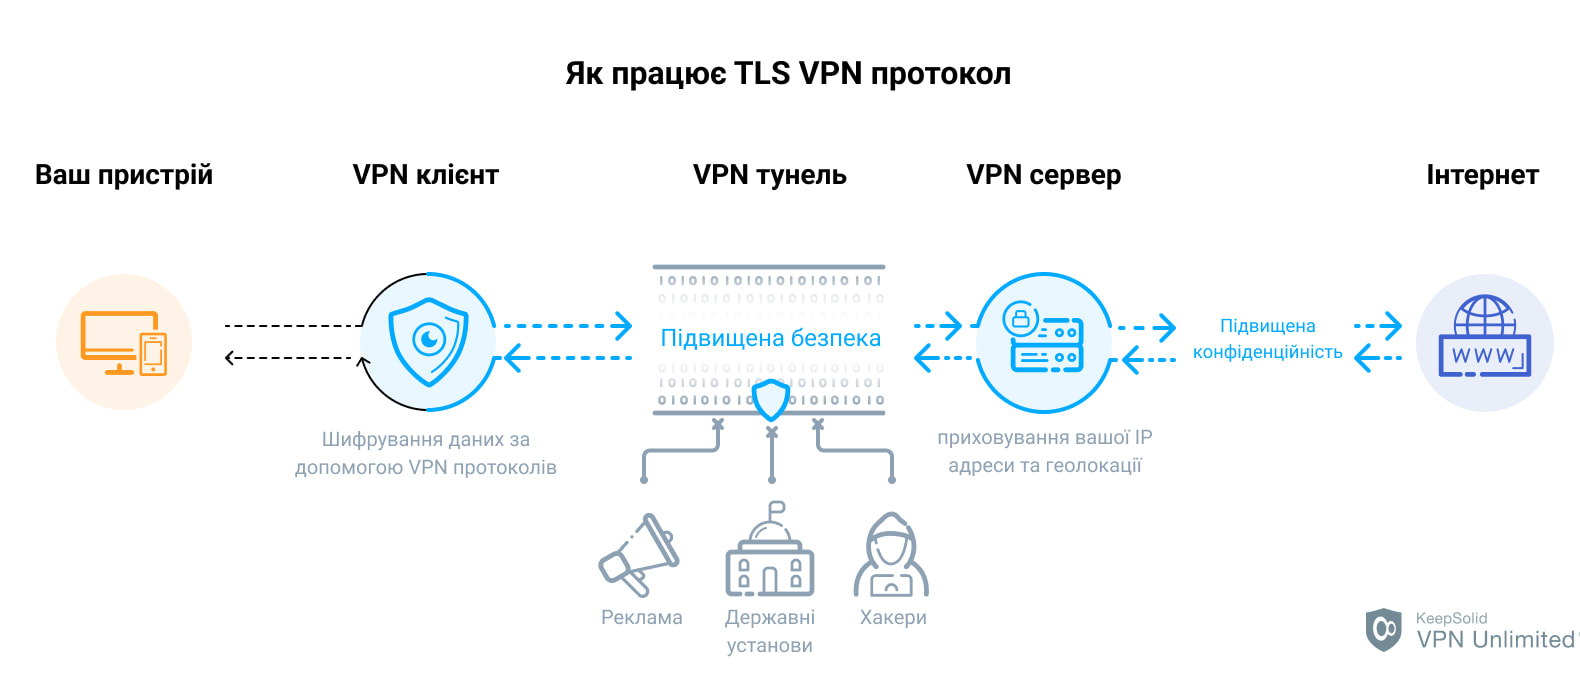 VPN protocol